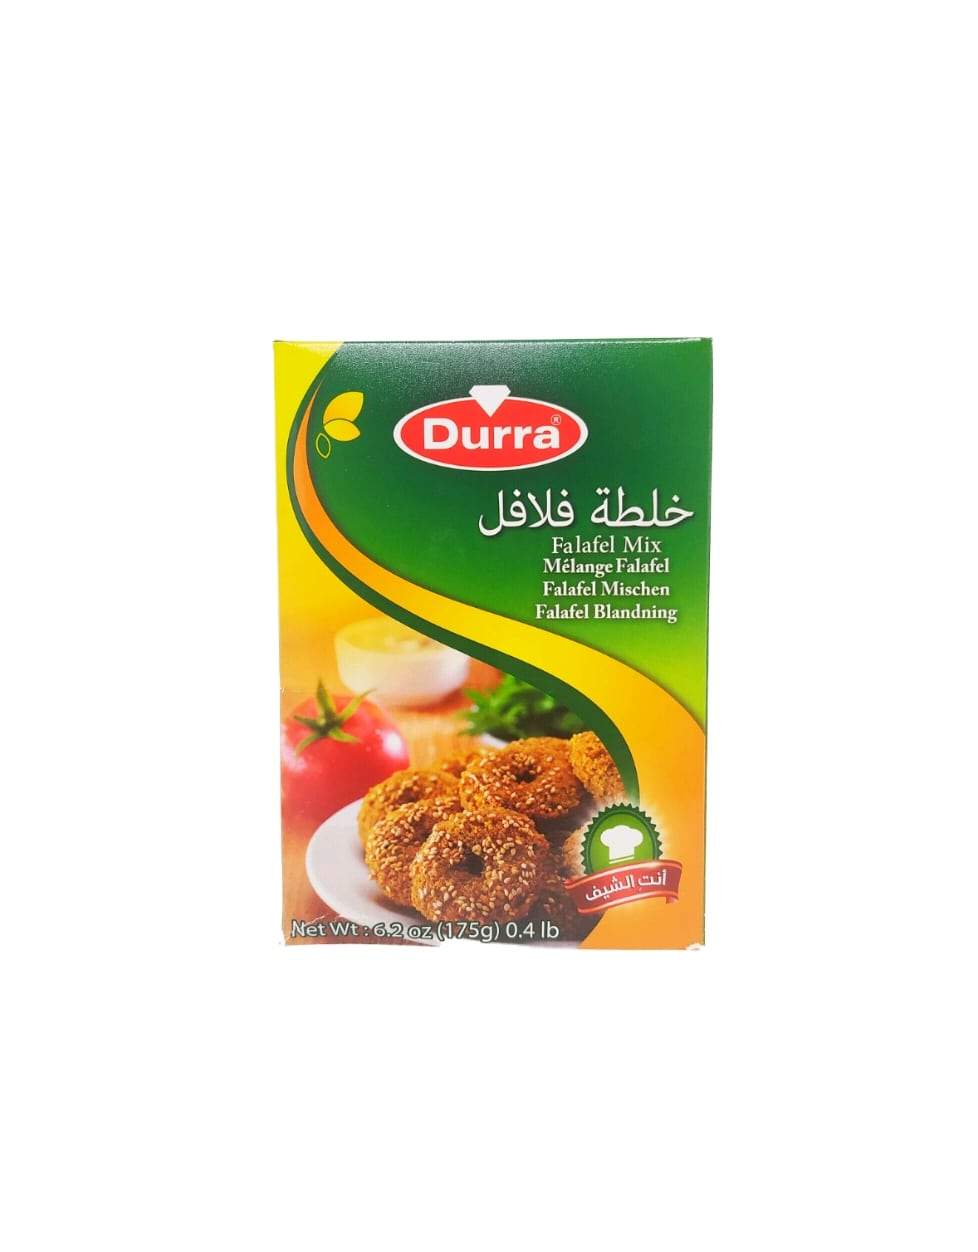 Produits orientaux en ligne : Durra - Falafel mix 175g